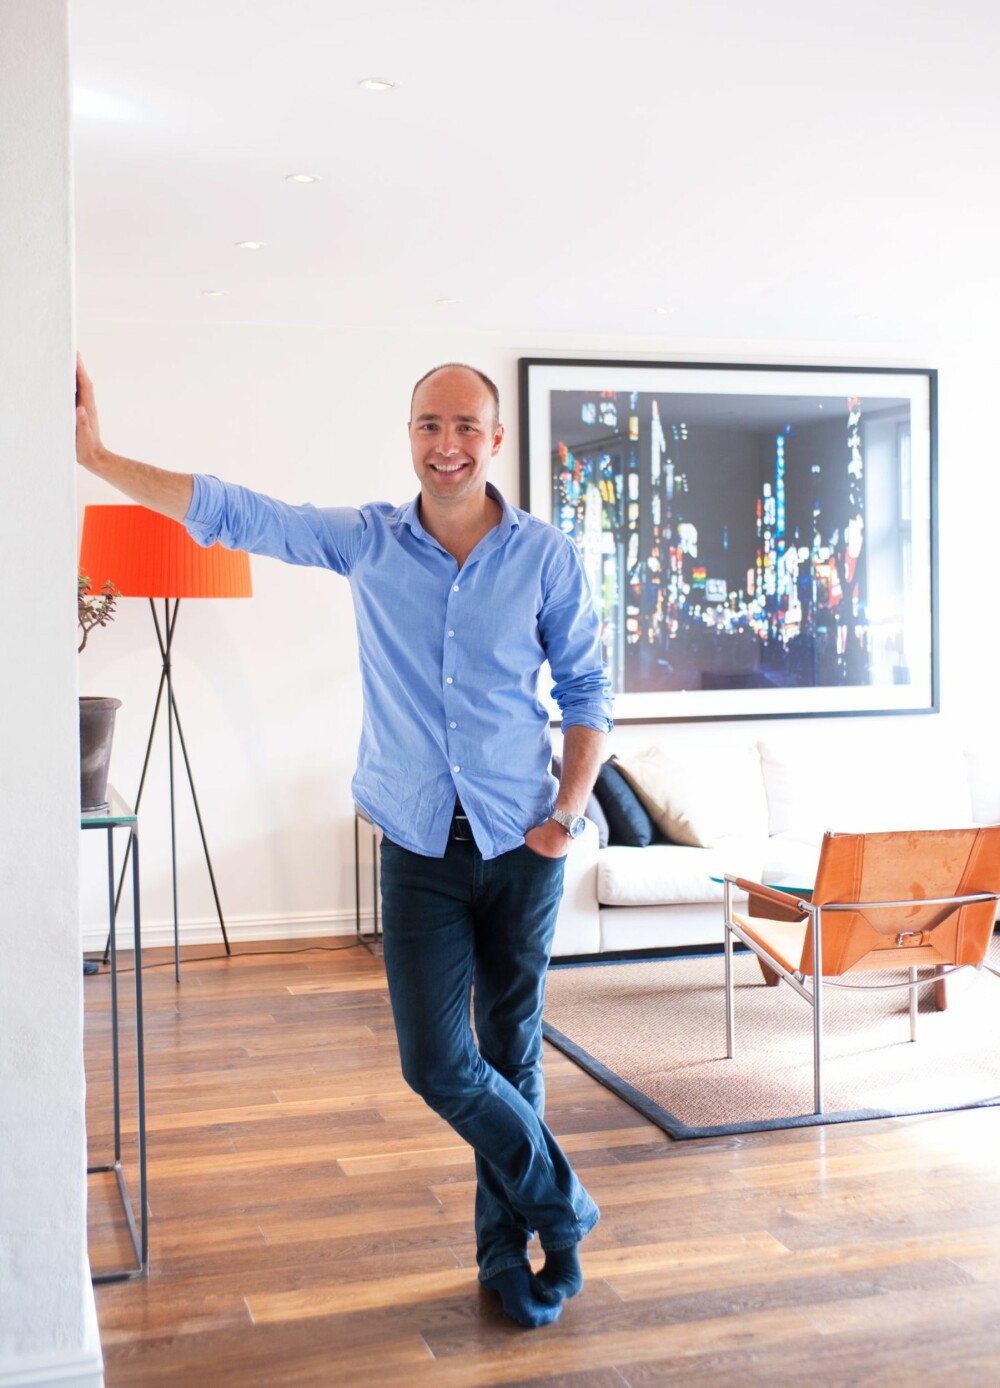 MØBELENTUSIAST: Lars Hafstad bruker både hodet
og hjertet, tid og penger, når han kjøper møbler.